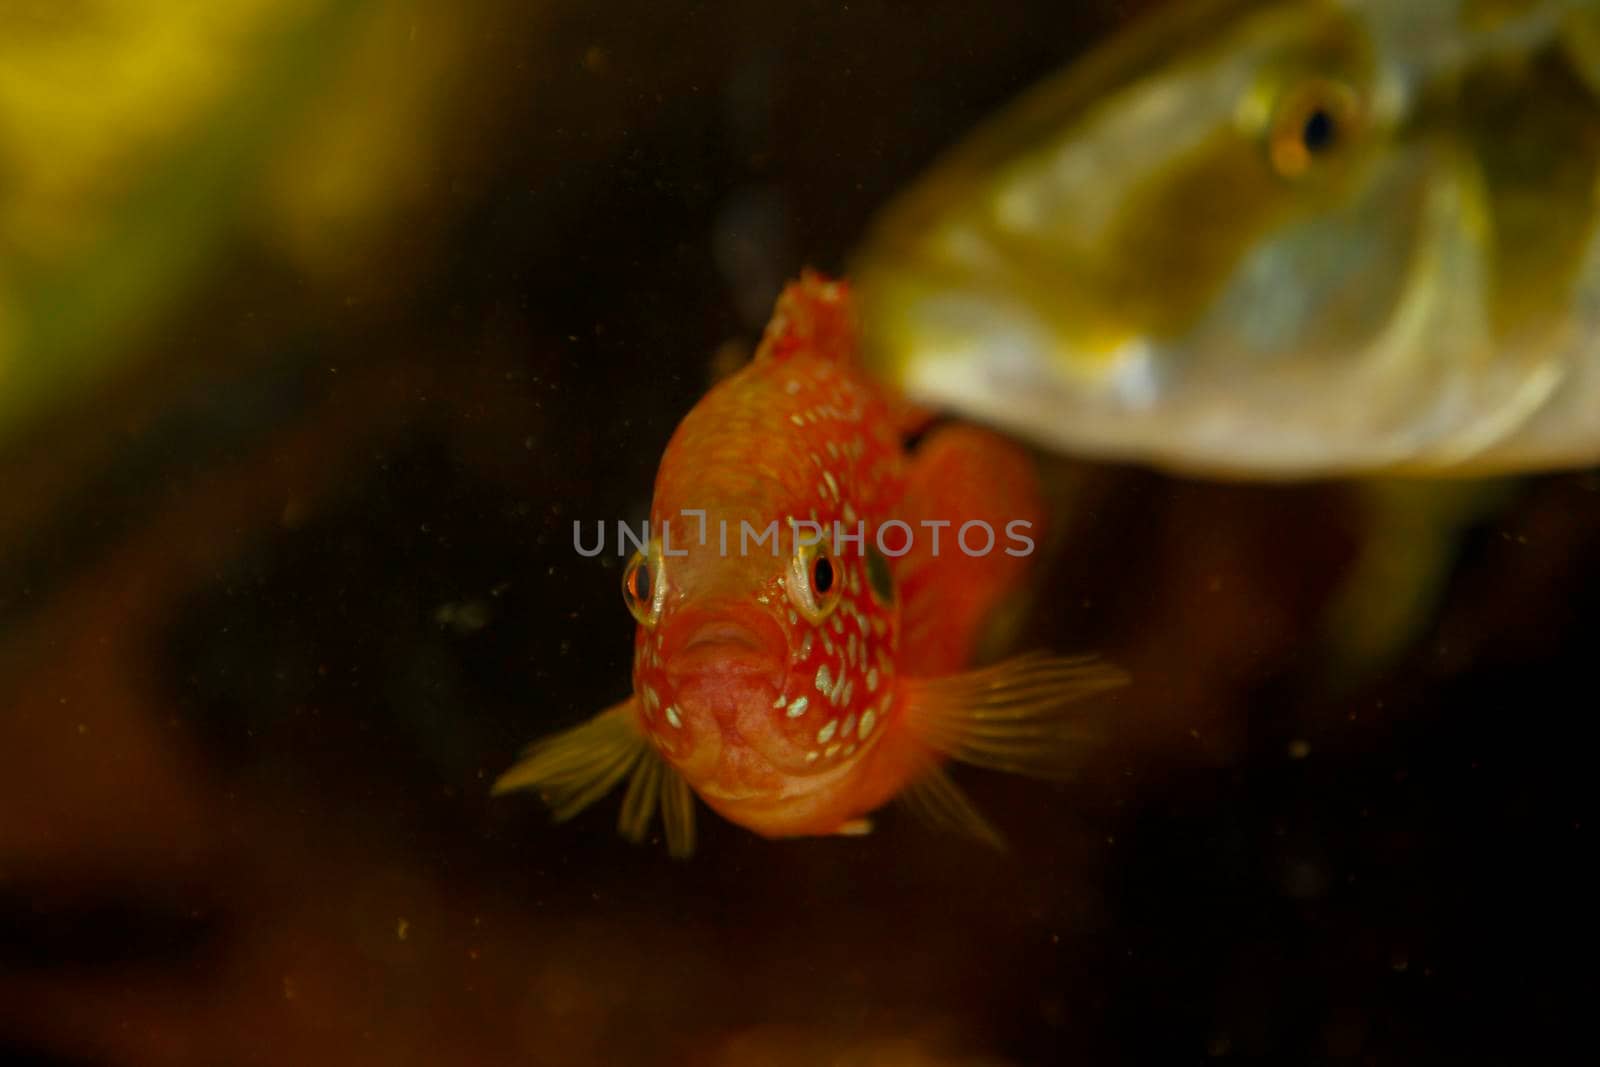 Hemichromis bimaculatus African jewelfish in aquarium . High quality photo